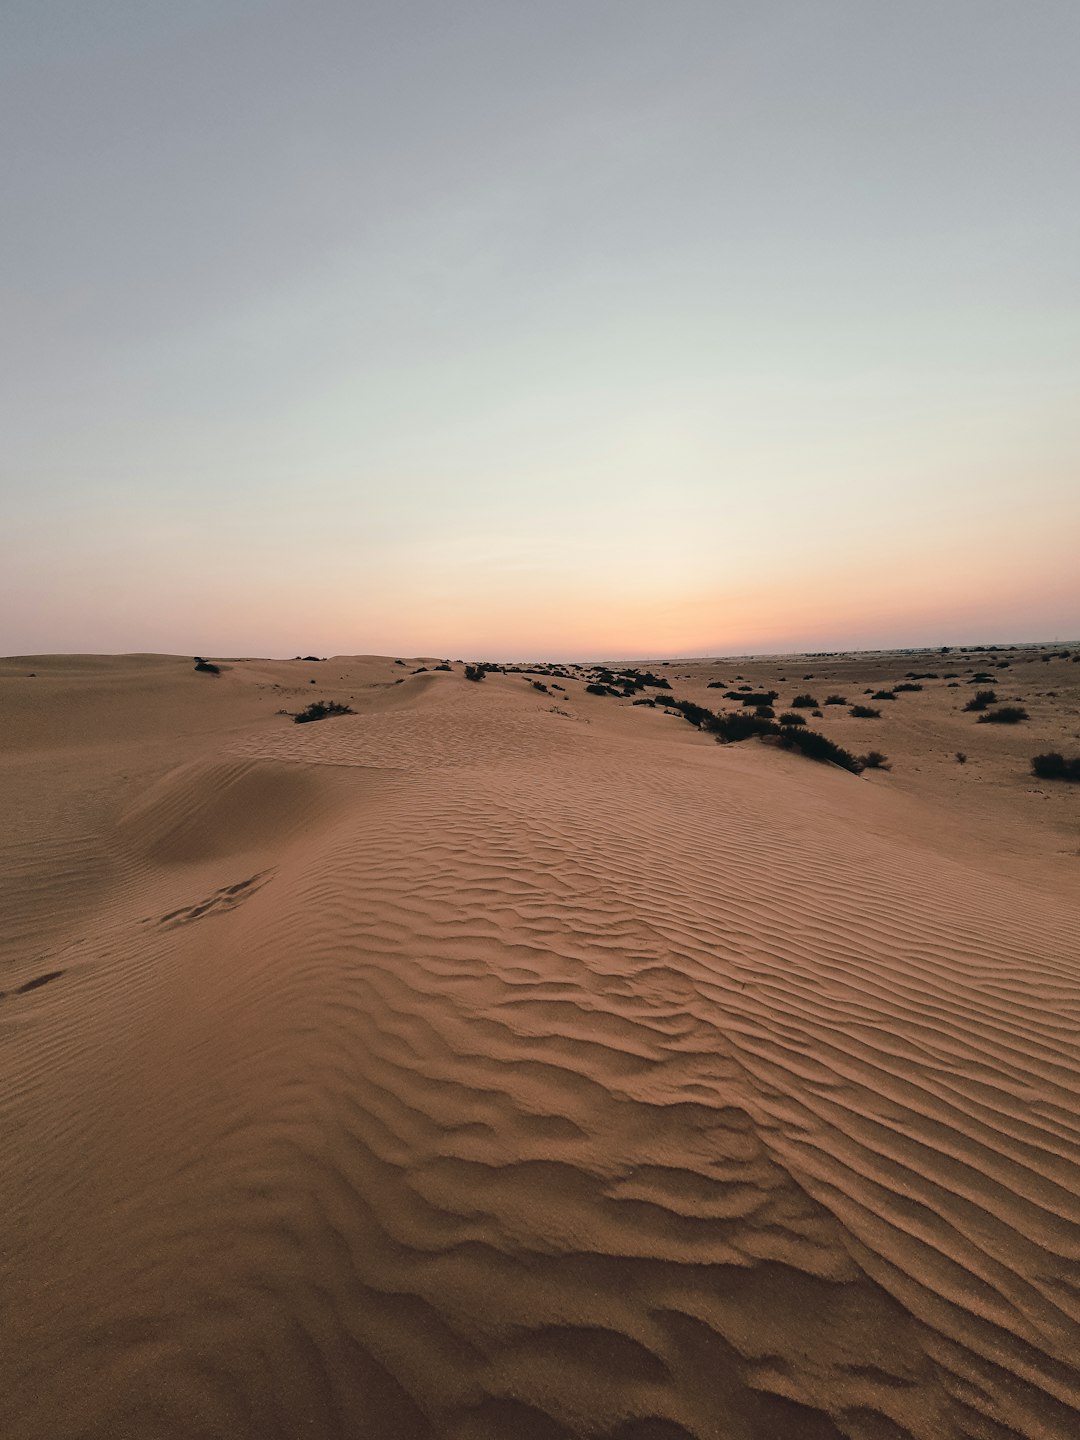 Desert photo spot Shahamah - Abu Dhabi - United Arab Emirates Dubai - United Arab Emirates